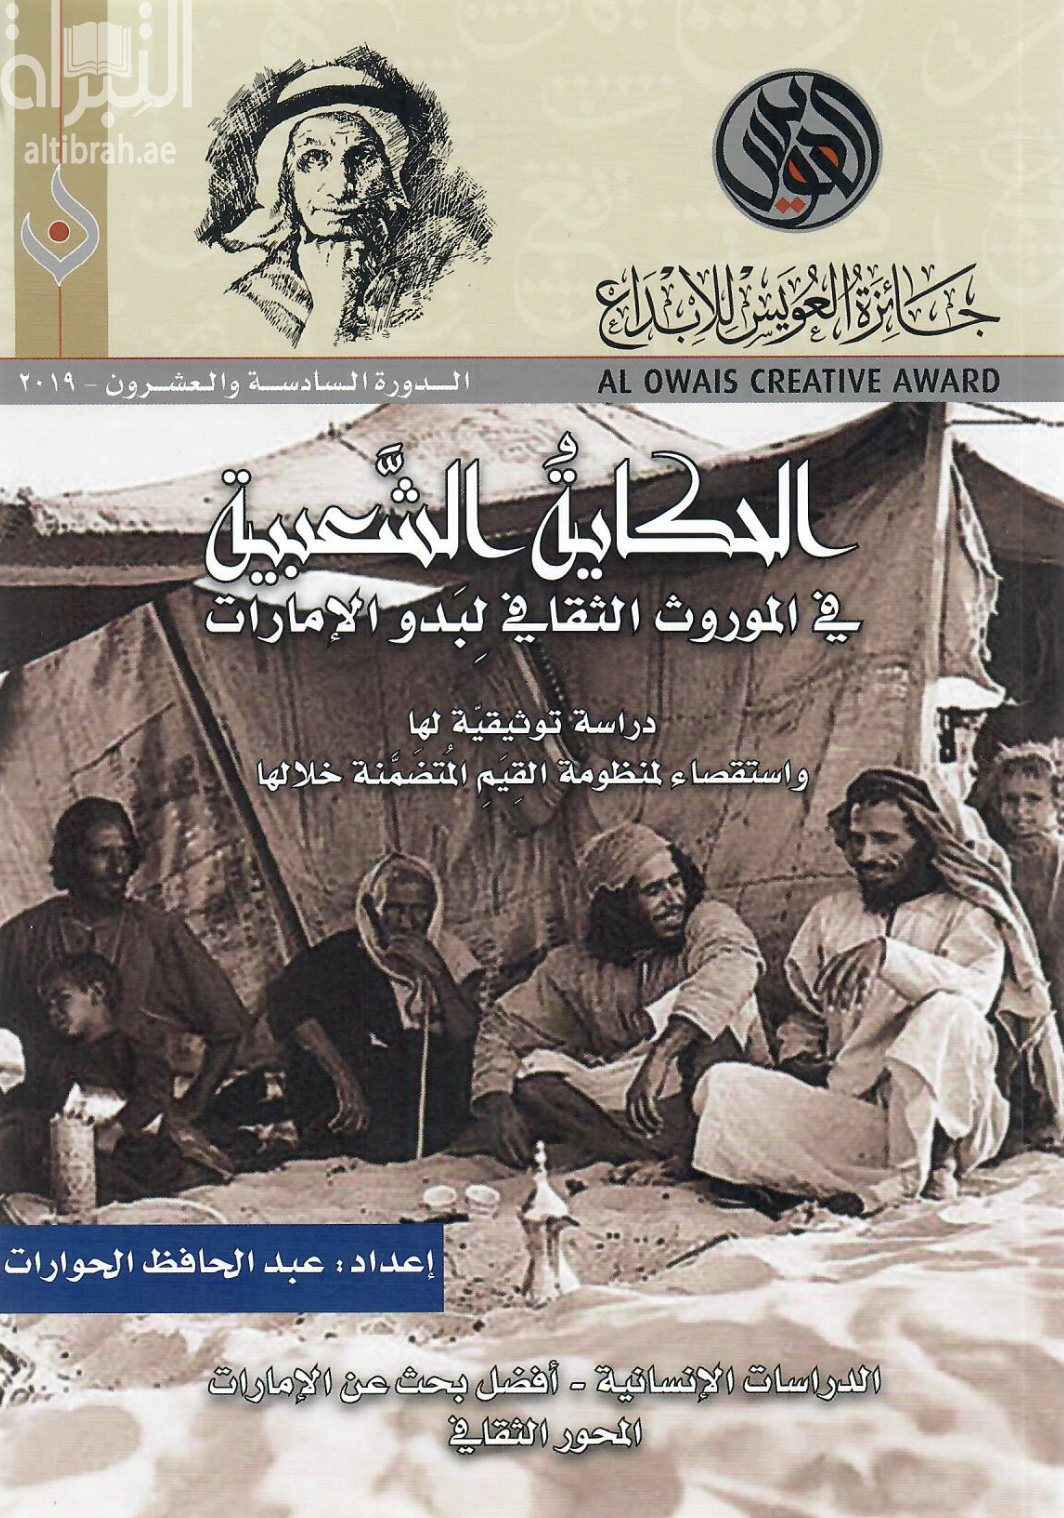 الحكاية الشعبية في الموروث الثقافي لبدو الإمارات : دراسة توثيقية لها واستقصاء لمنظومة القيم المتضمنة خلالها